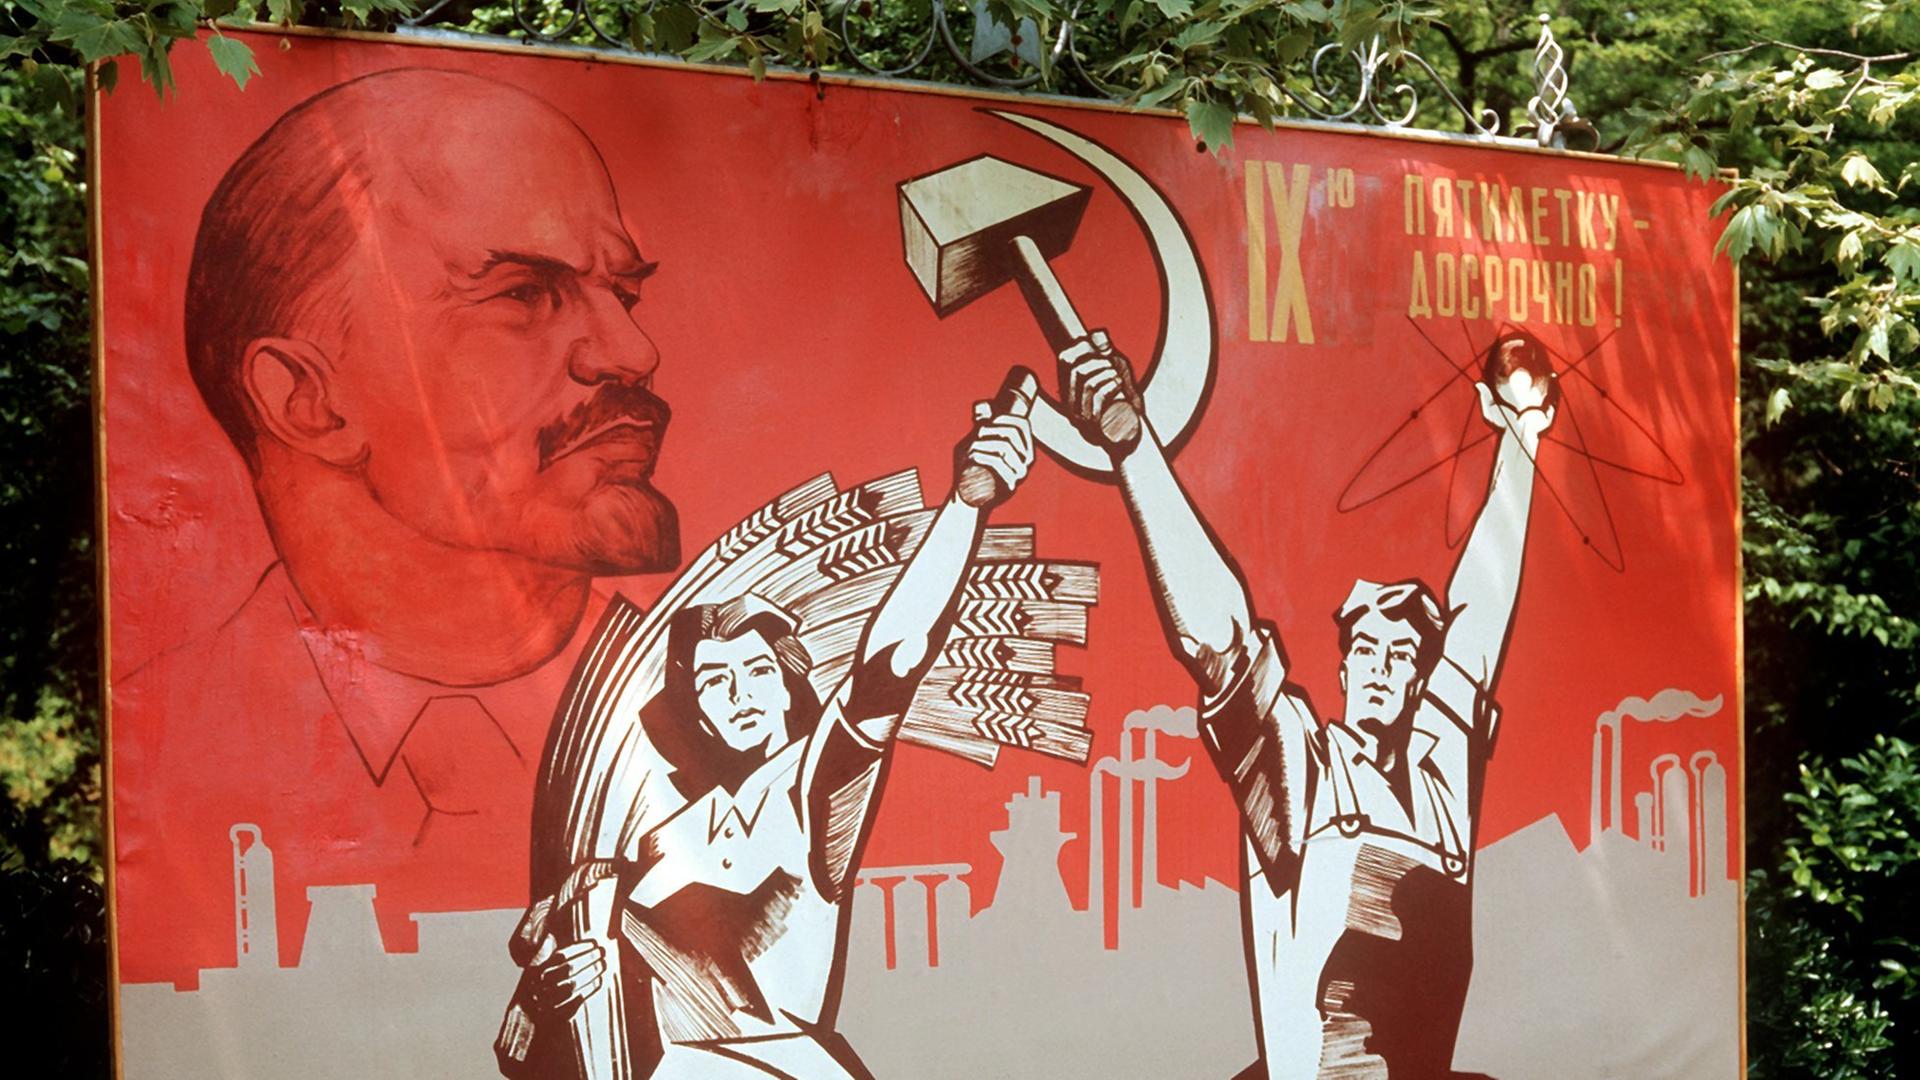 Ein großformatiges Plakat mit Lenin-Konterfei und der Darstellung von Arbeiter und Bäuerin mit Hammer und Sichel